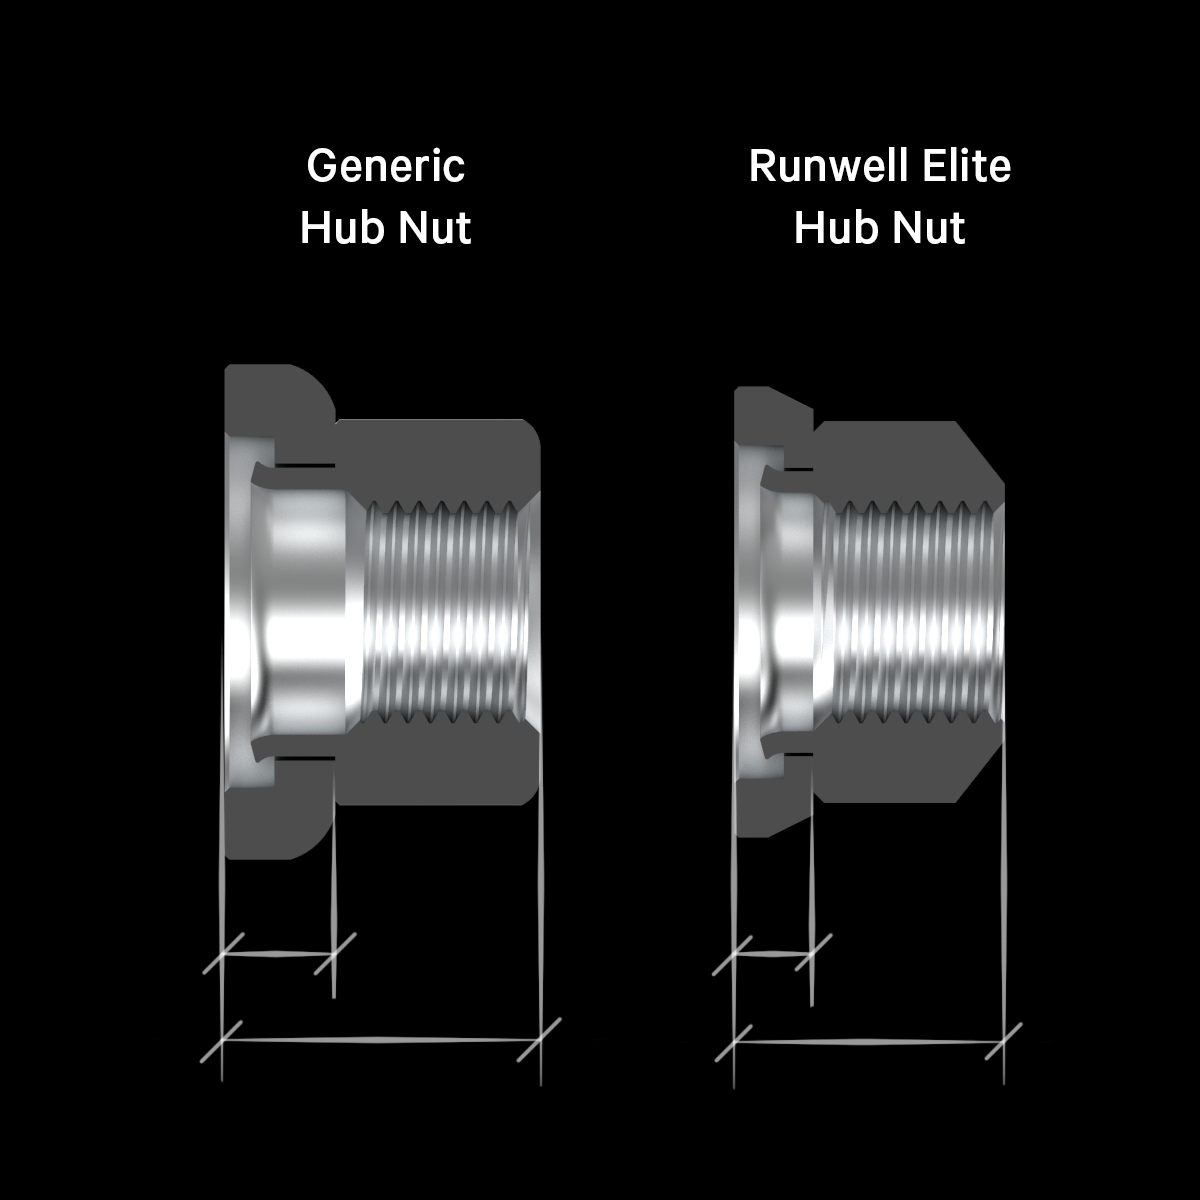 Elite Runwell hub nut comparison between generic axle nuts